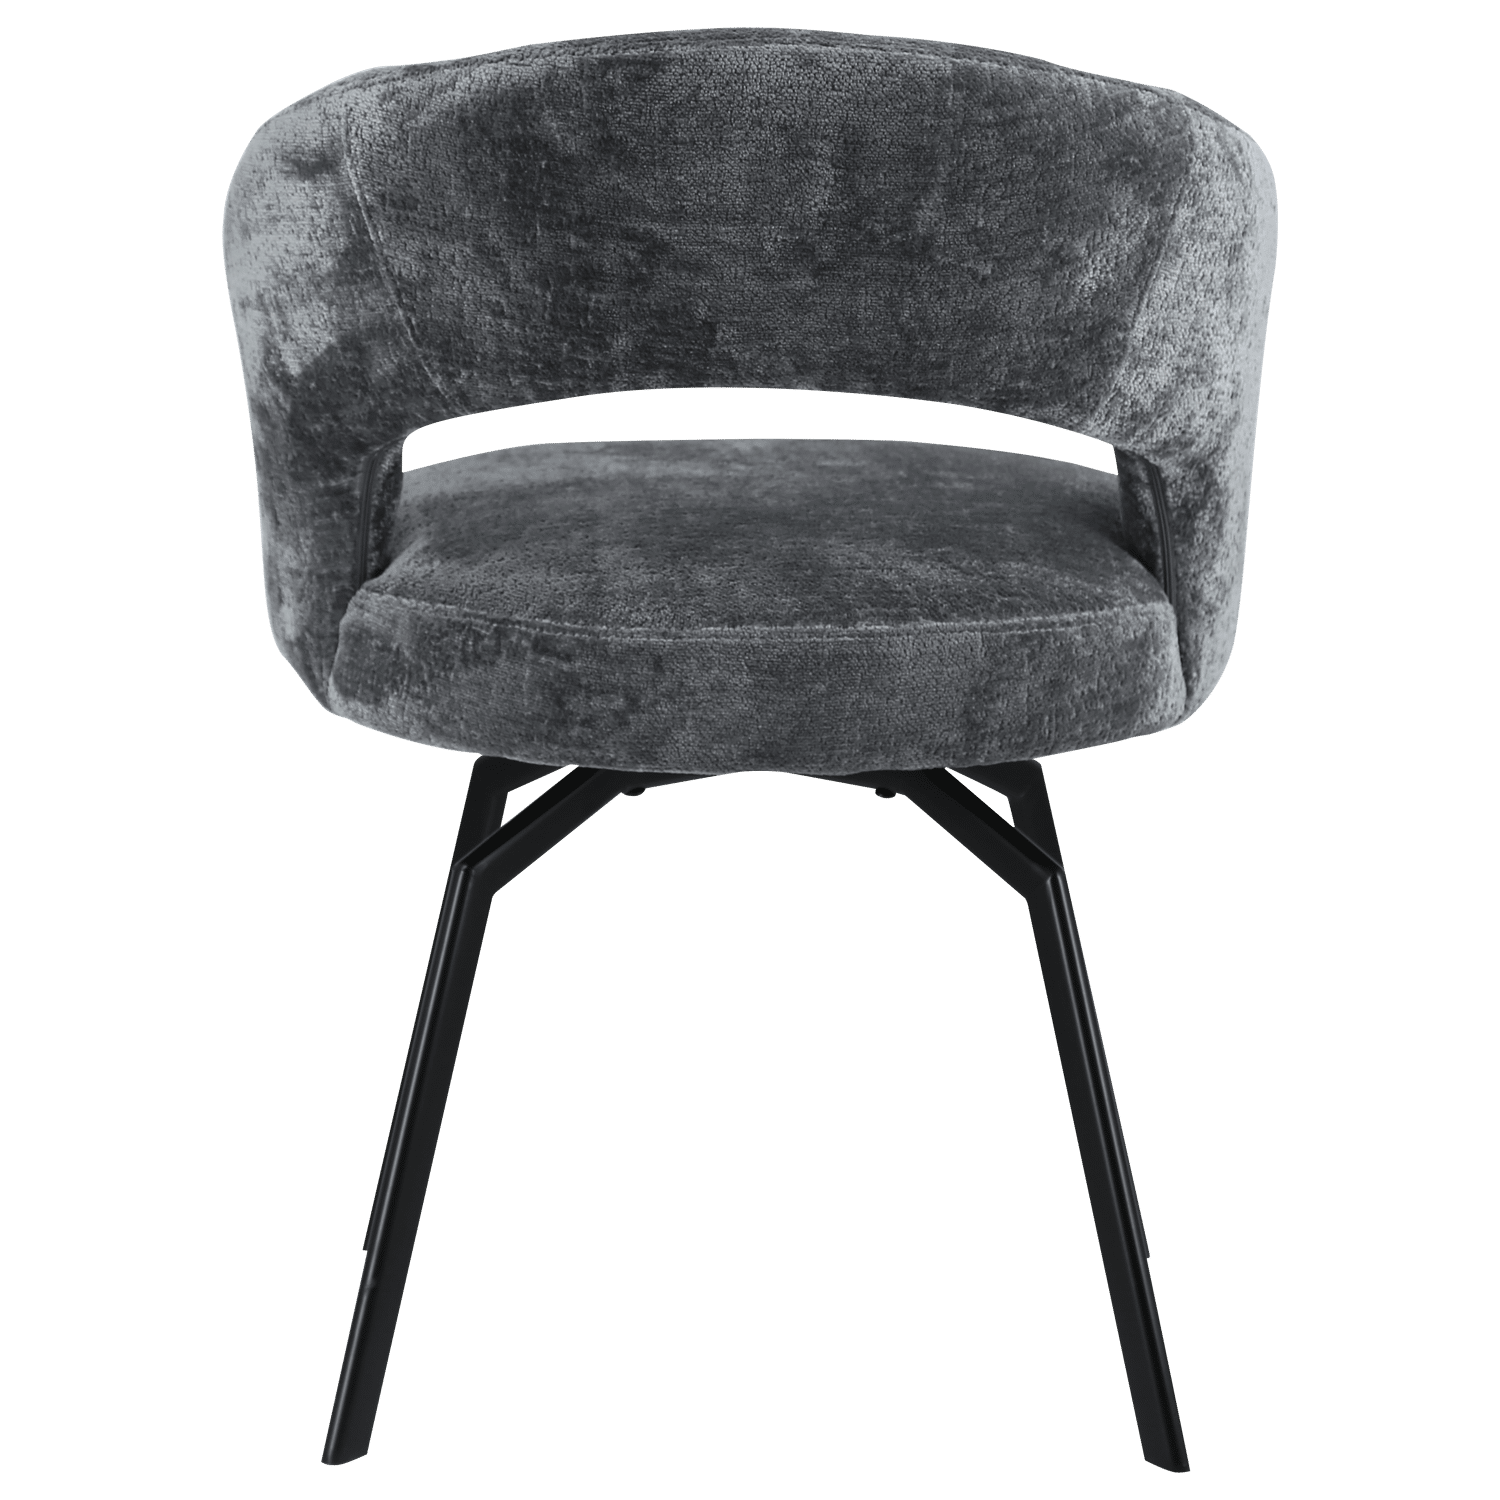 Chaise en chenille grise EHBA